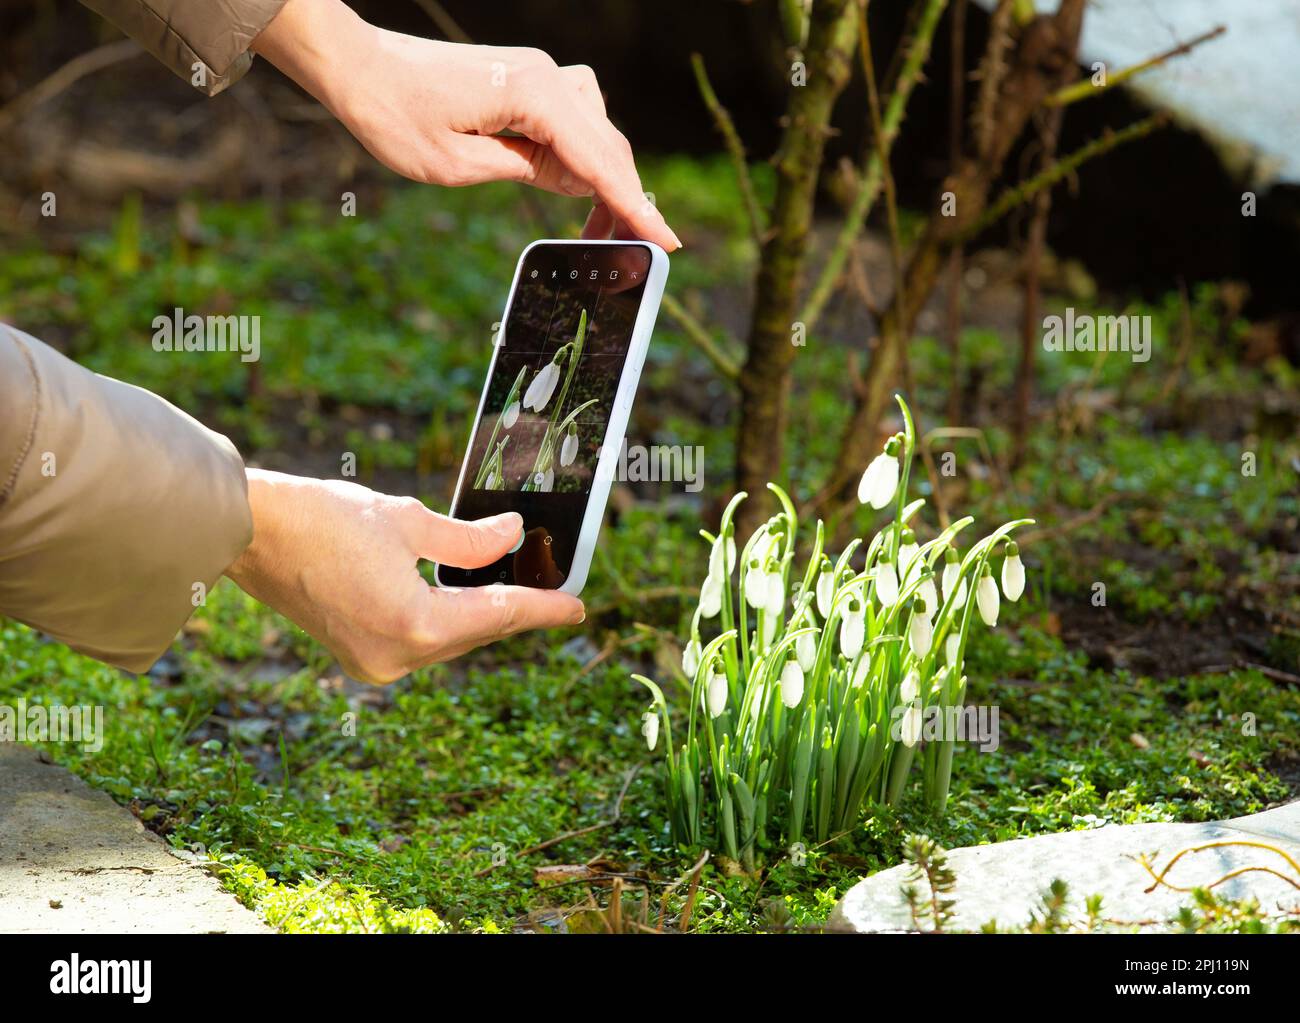 Ein Mädchen fotografiert im Frühling im Freien mit einem Handy blühende Schneeflocken. Frauenhände machen ein Foto von Schneetropfen am Telefon. Stockfoto